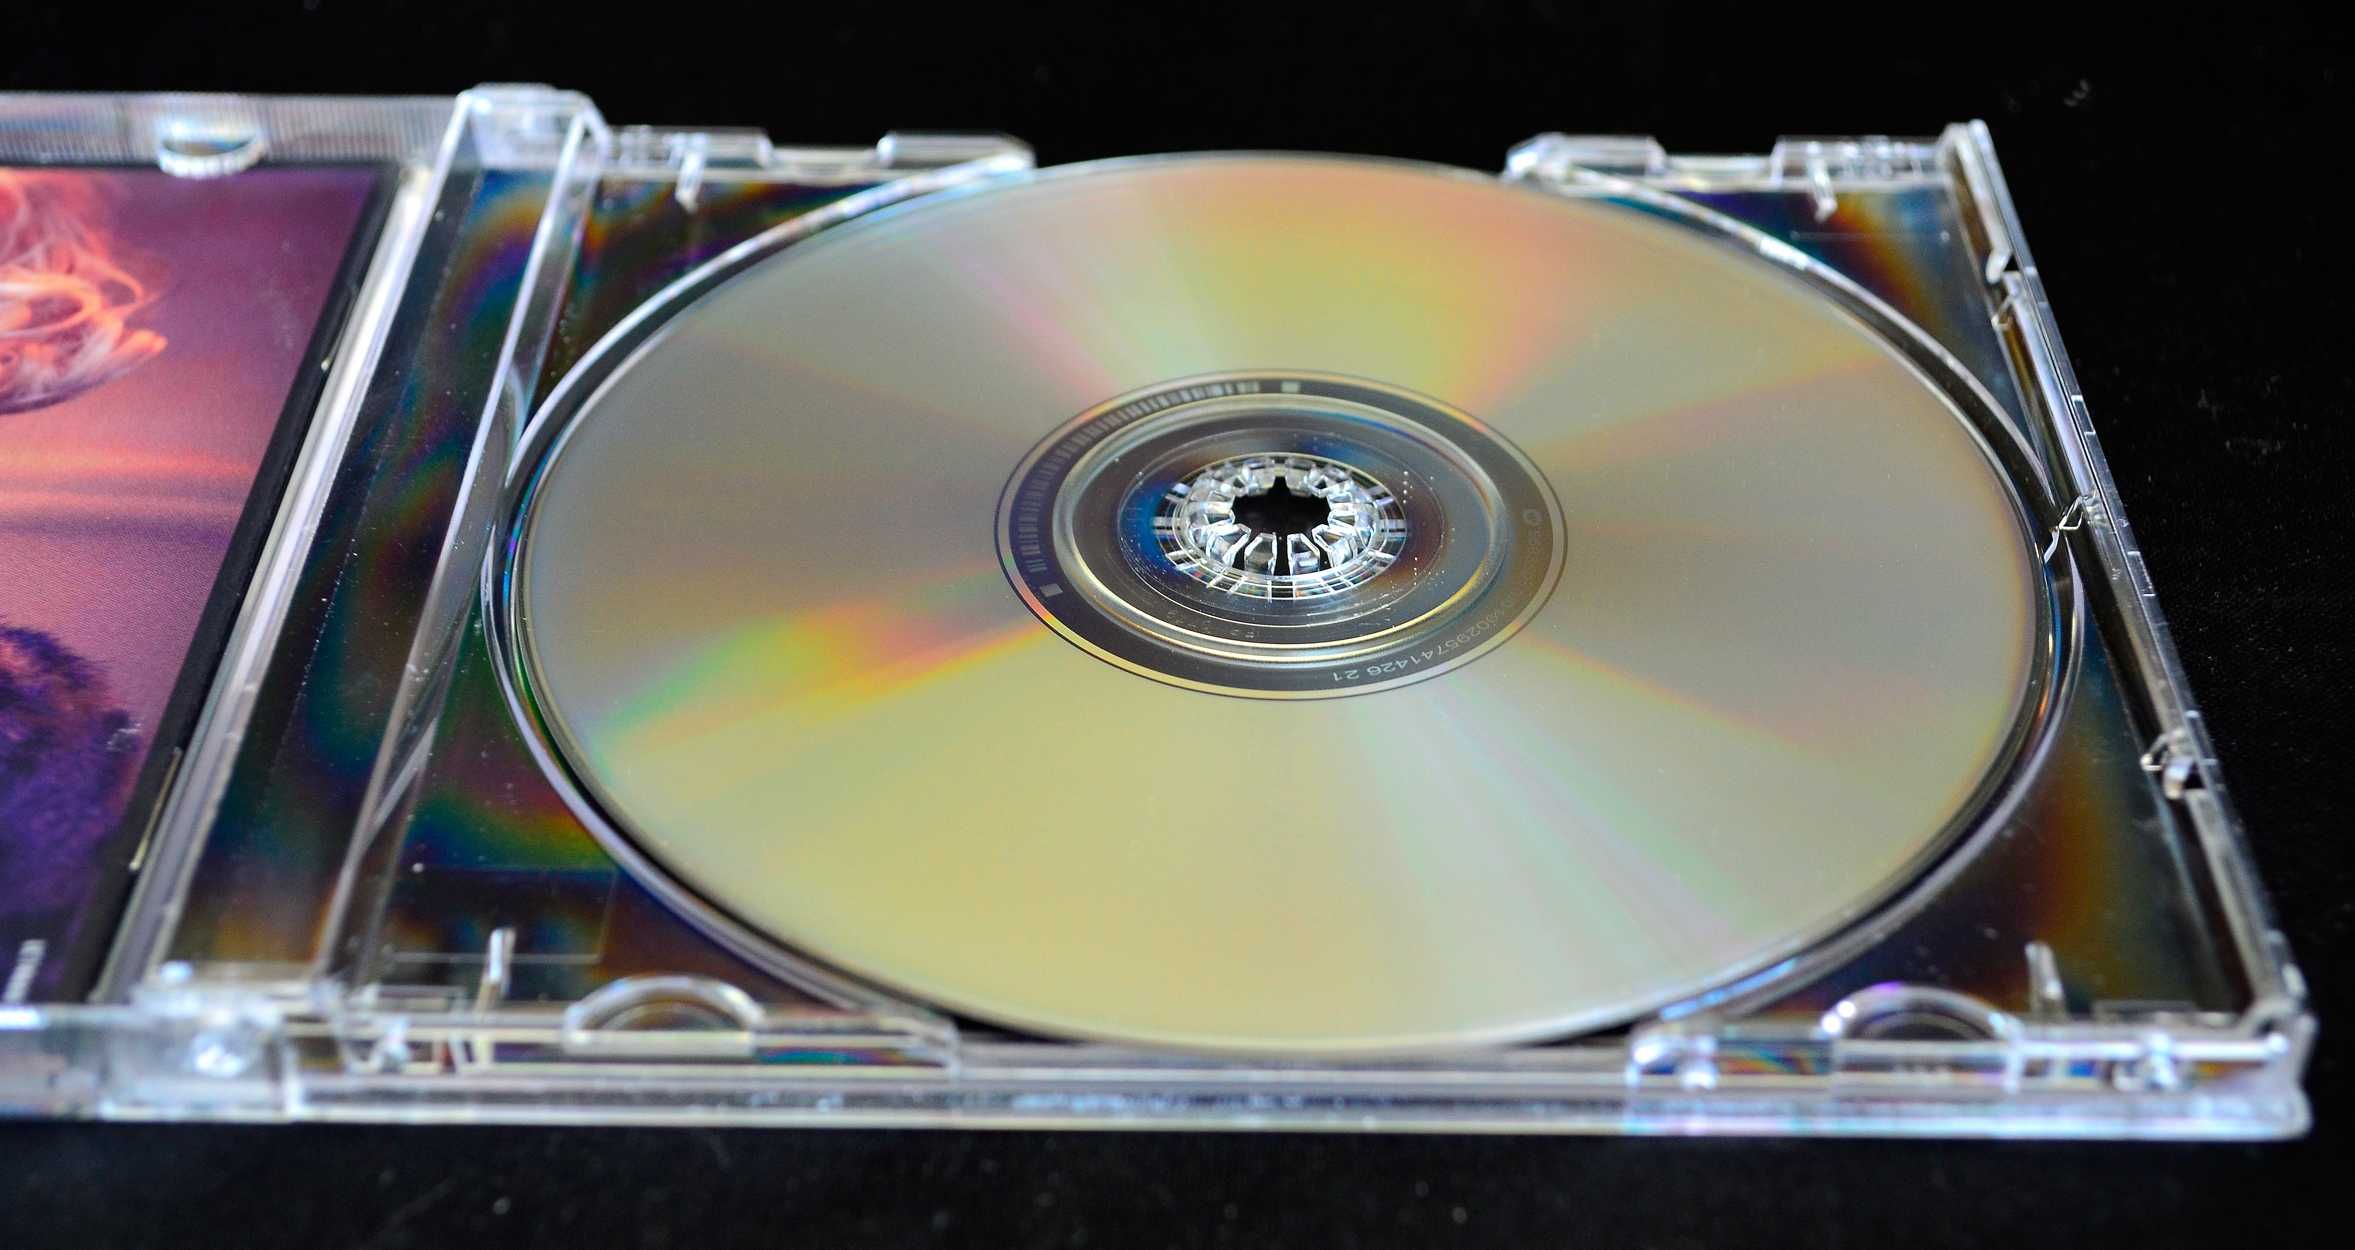 Sheridan Smith – Sheridan The Album X (CD)